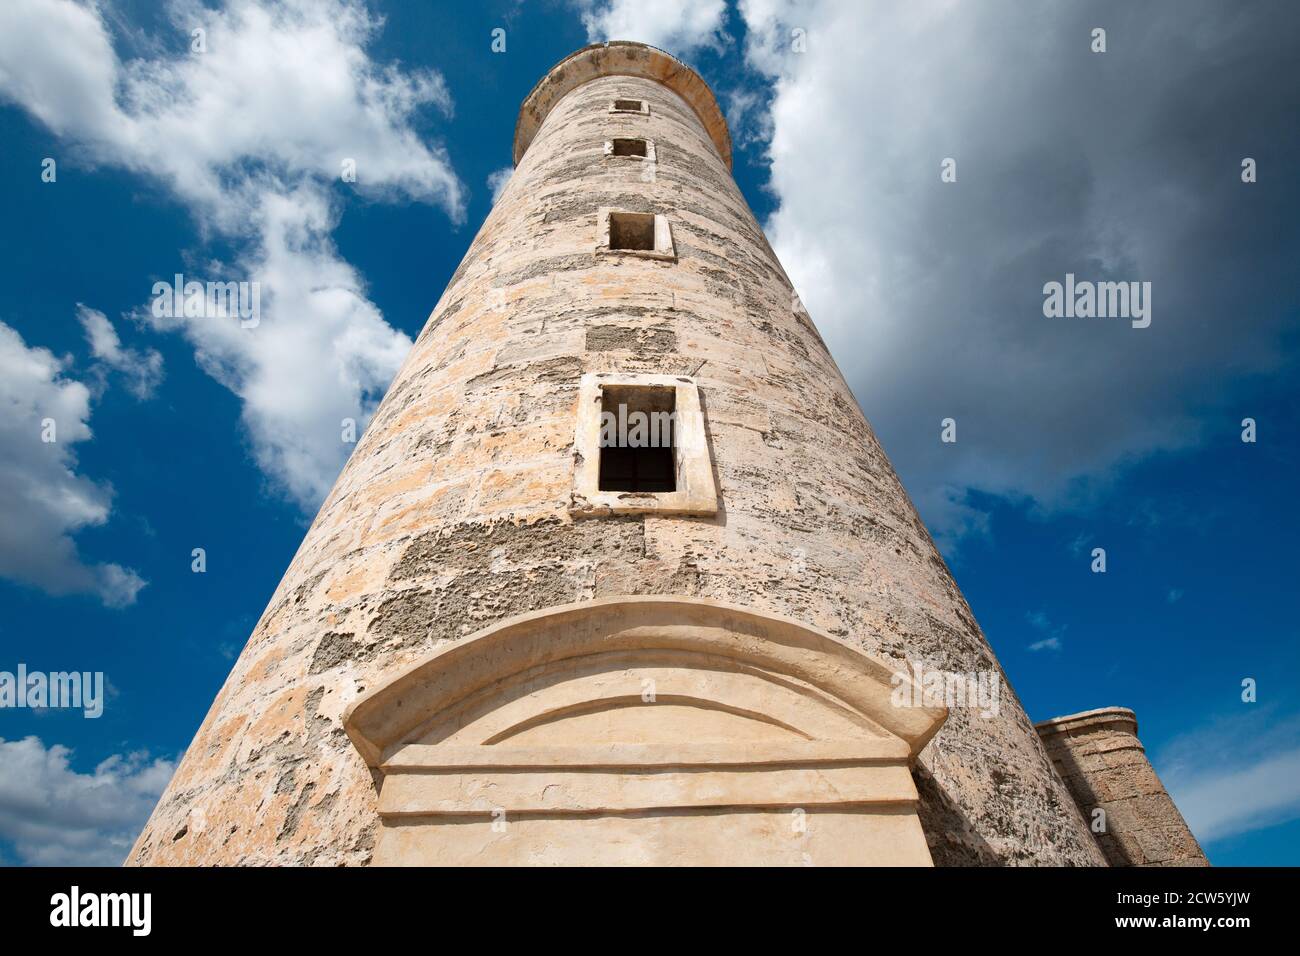 Cubaoutings - The Parque Historico Militar encompasses two of Havana's  famous fortresses: the Castillo de los Tres Reyes del Morro, also known as El  Morro, and Fortaleza de San Carlos de la